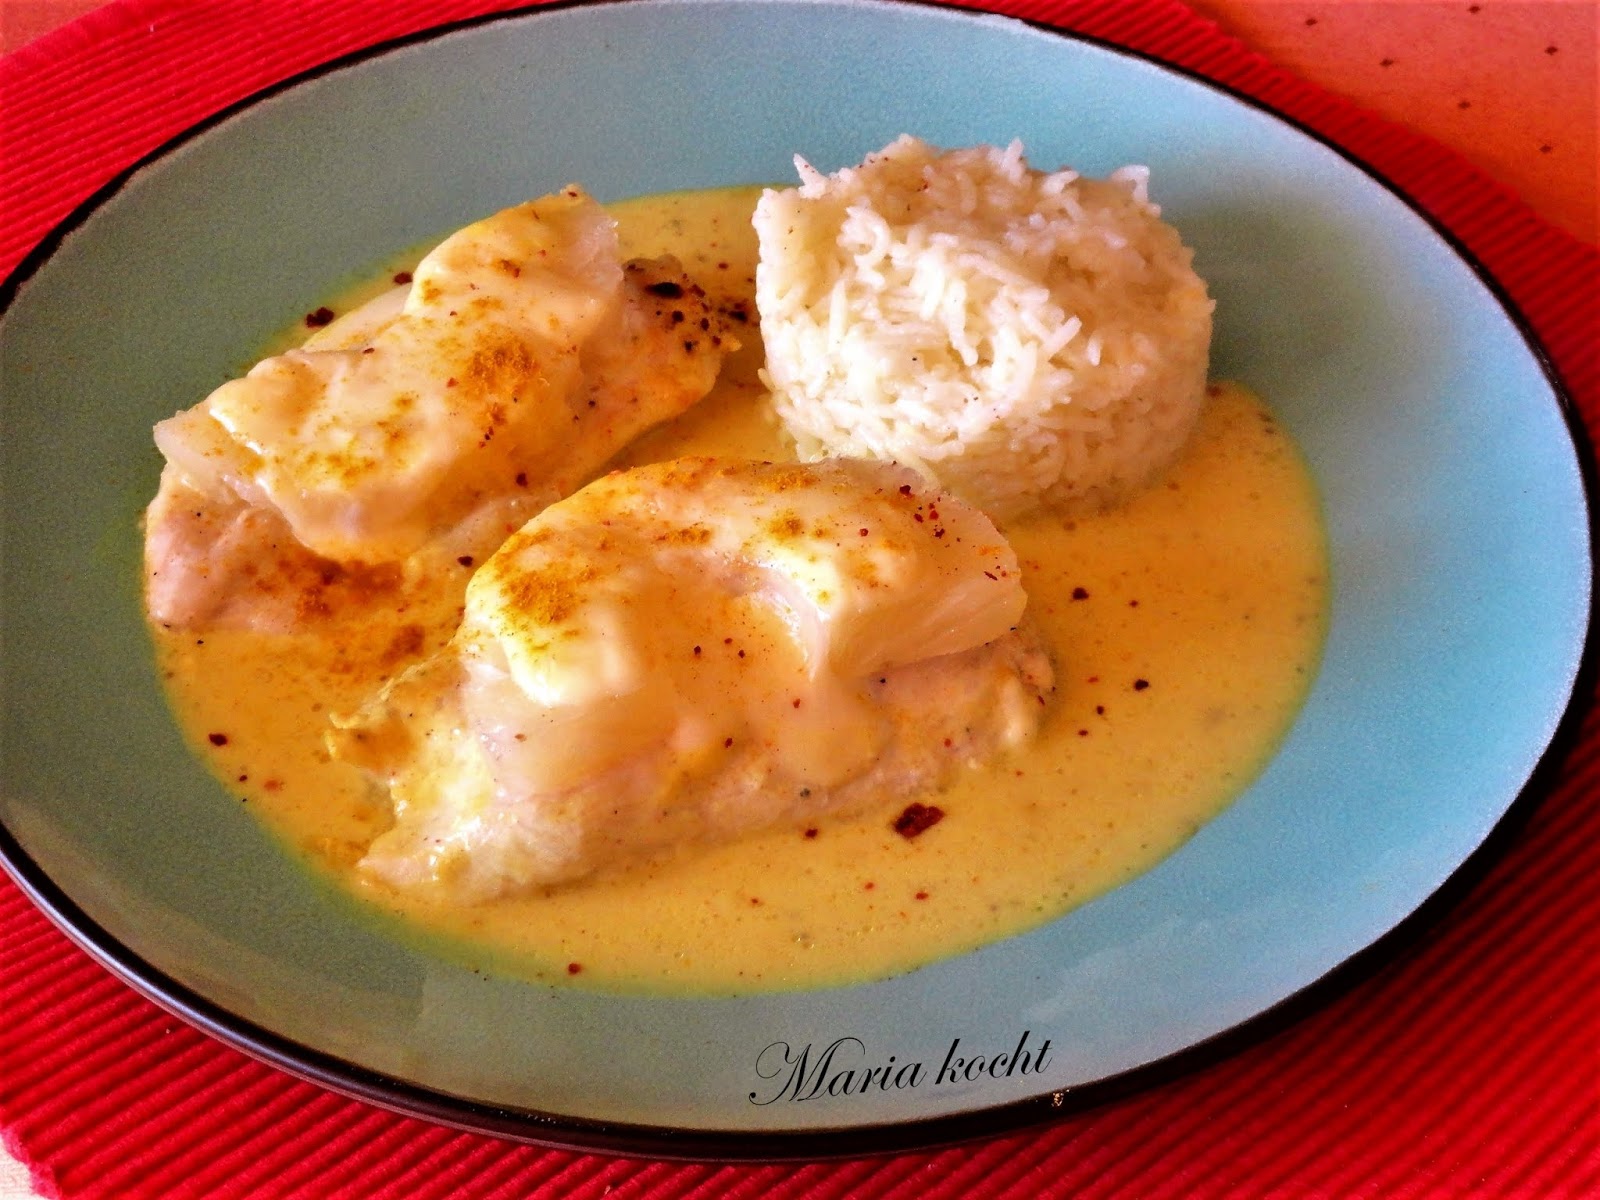 Maria kocht: Überbackene Hähnchenbrust mit Ananas und Käse ...